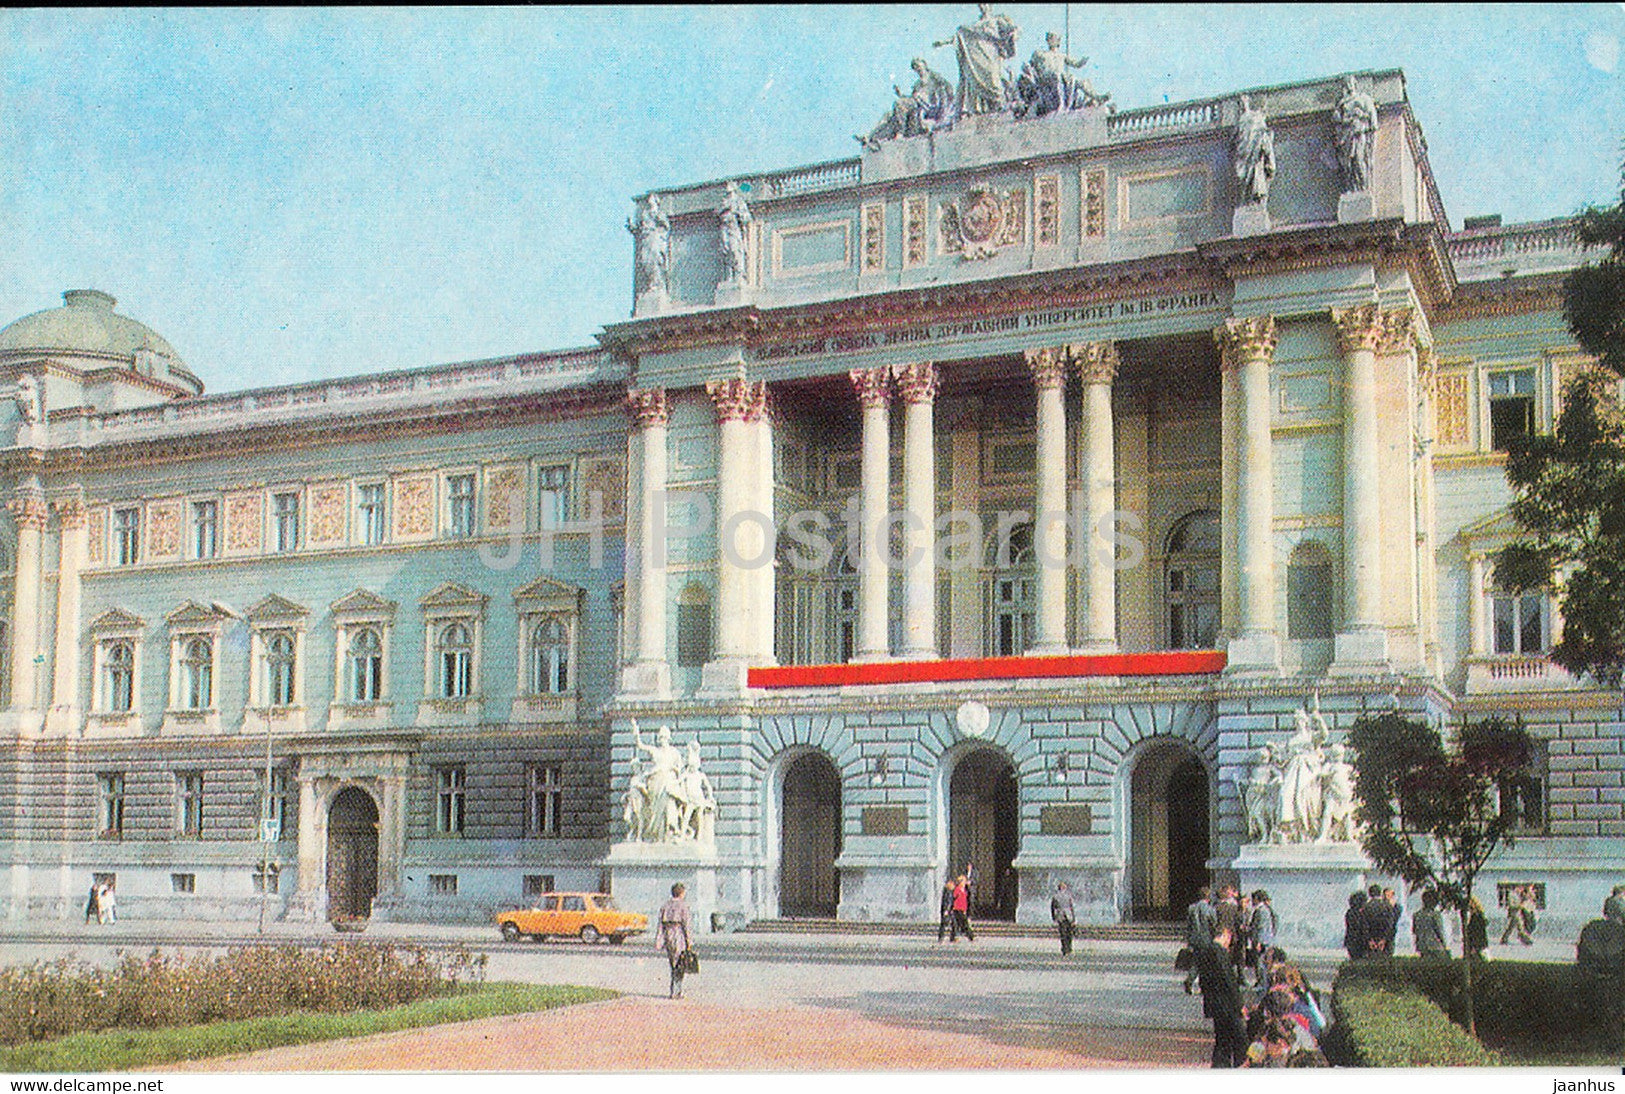 Lviv - Lvov - Franko State University - 1981 - Ukraine USSR - unused - JH Postcards